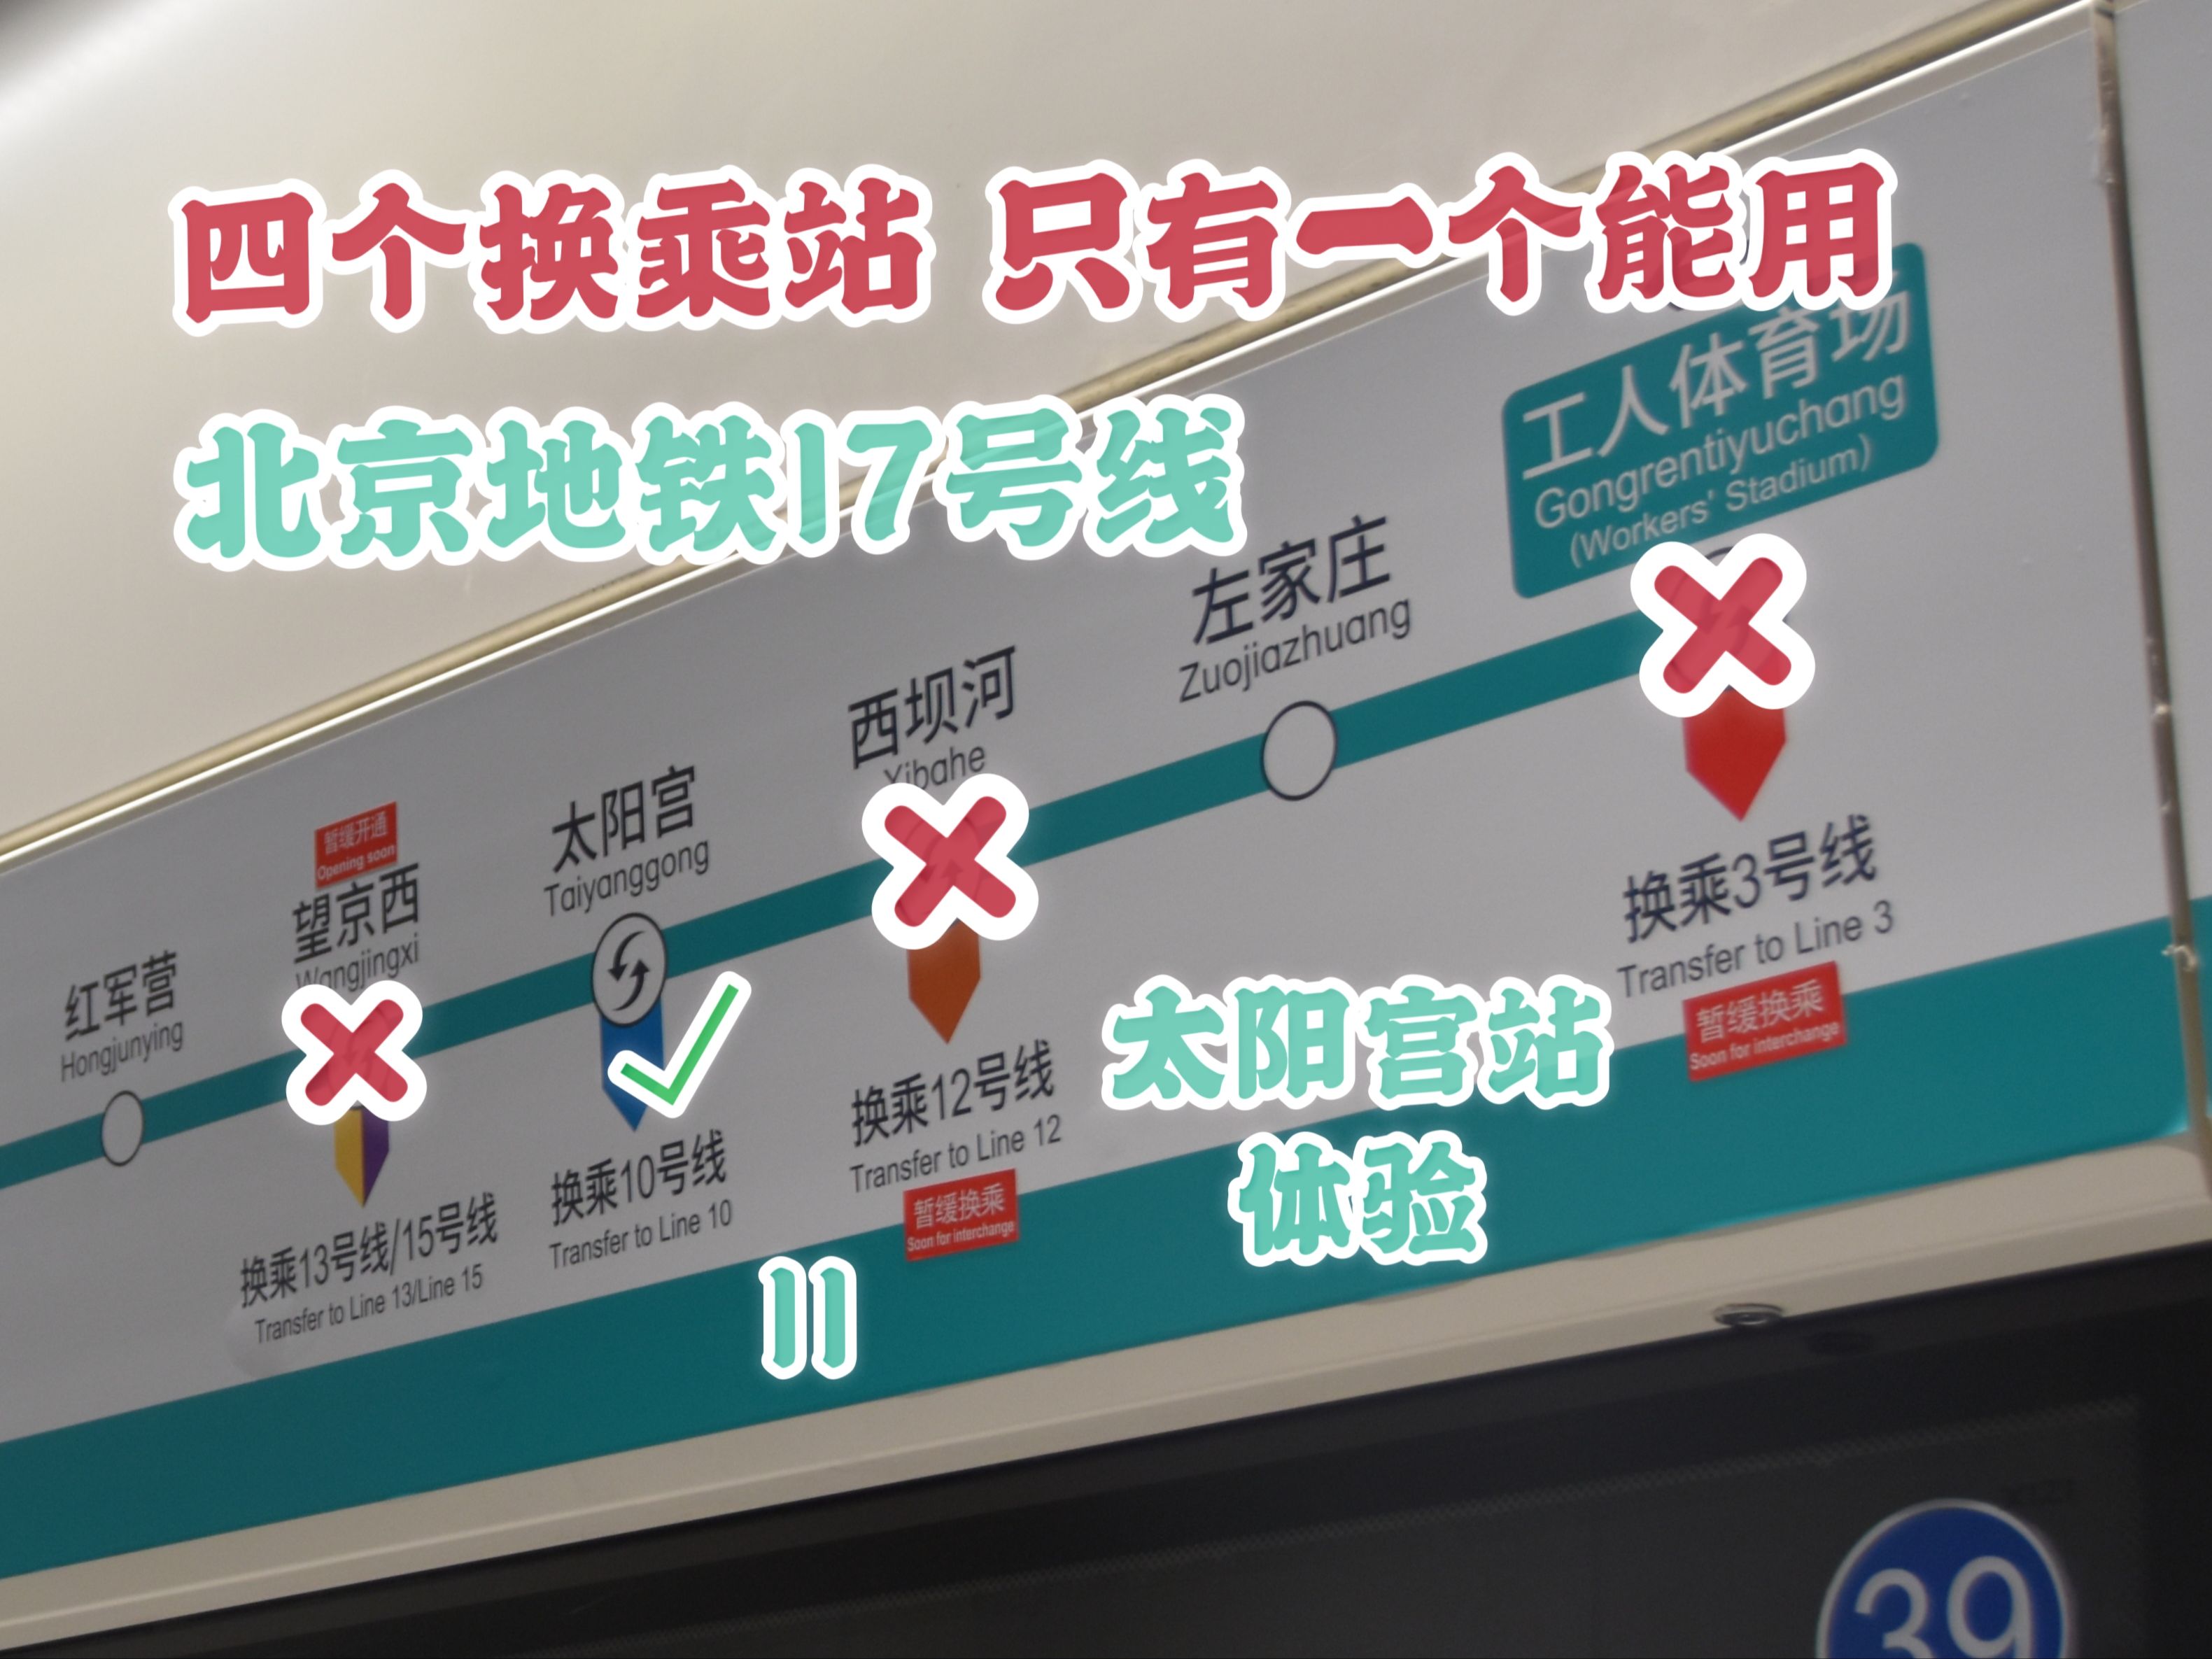 四个换乘站暂缓开通三个 北京地铁17号线太阳宫站记录